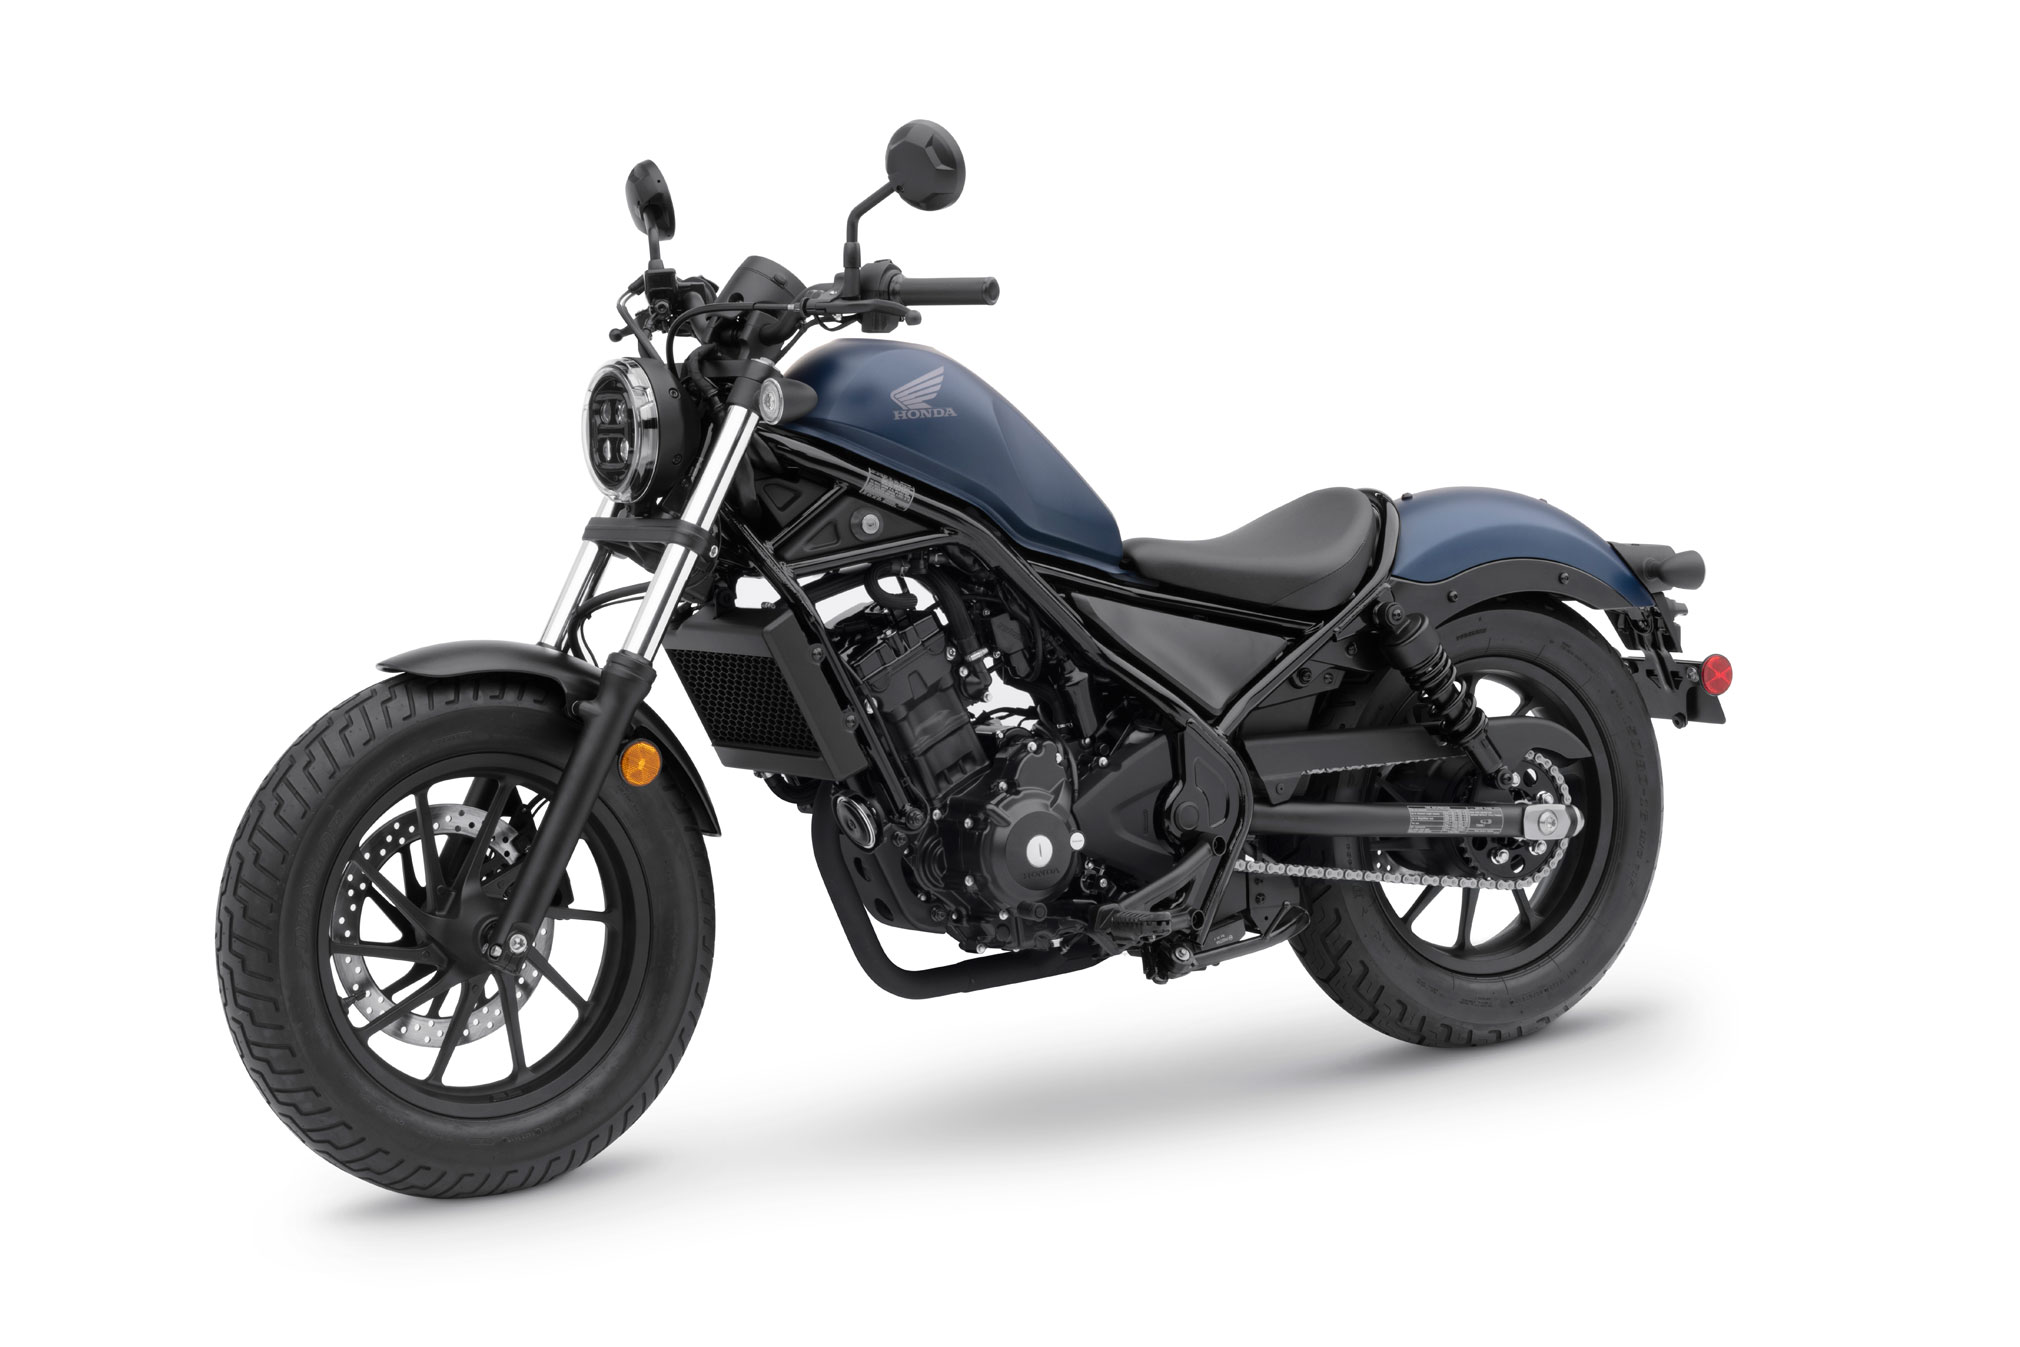 2020 Honda Rebel 300 Abs Guide Total Motorcycle